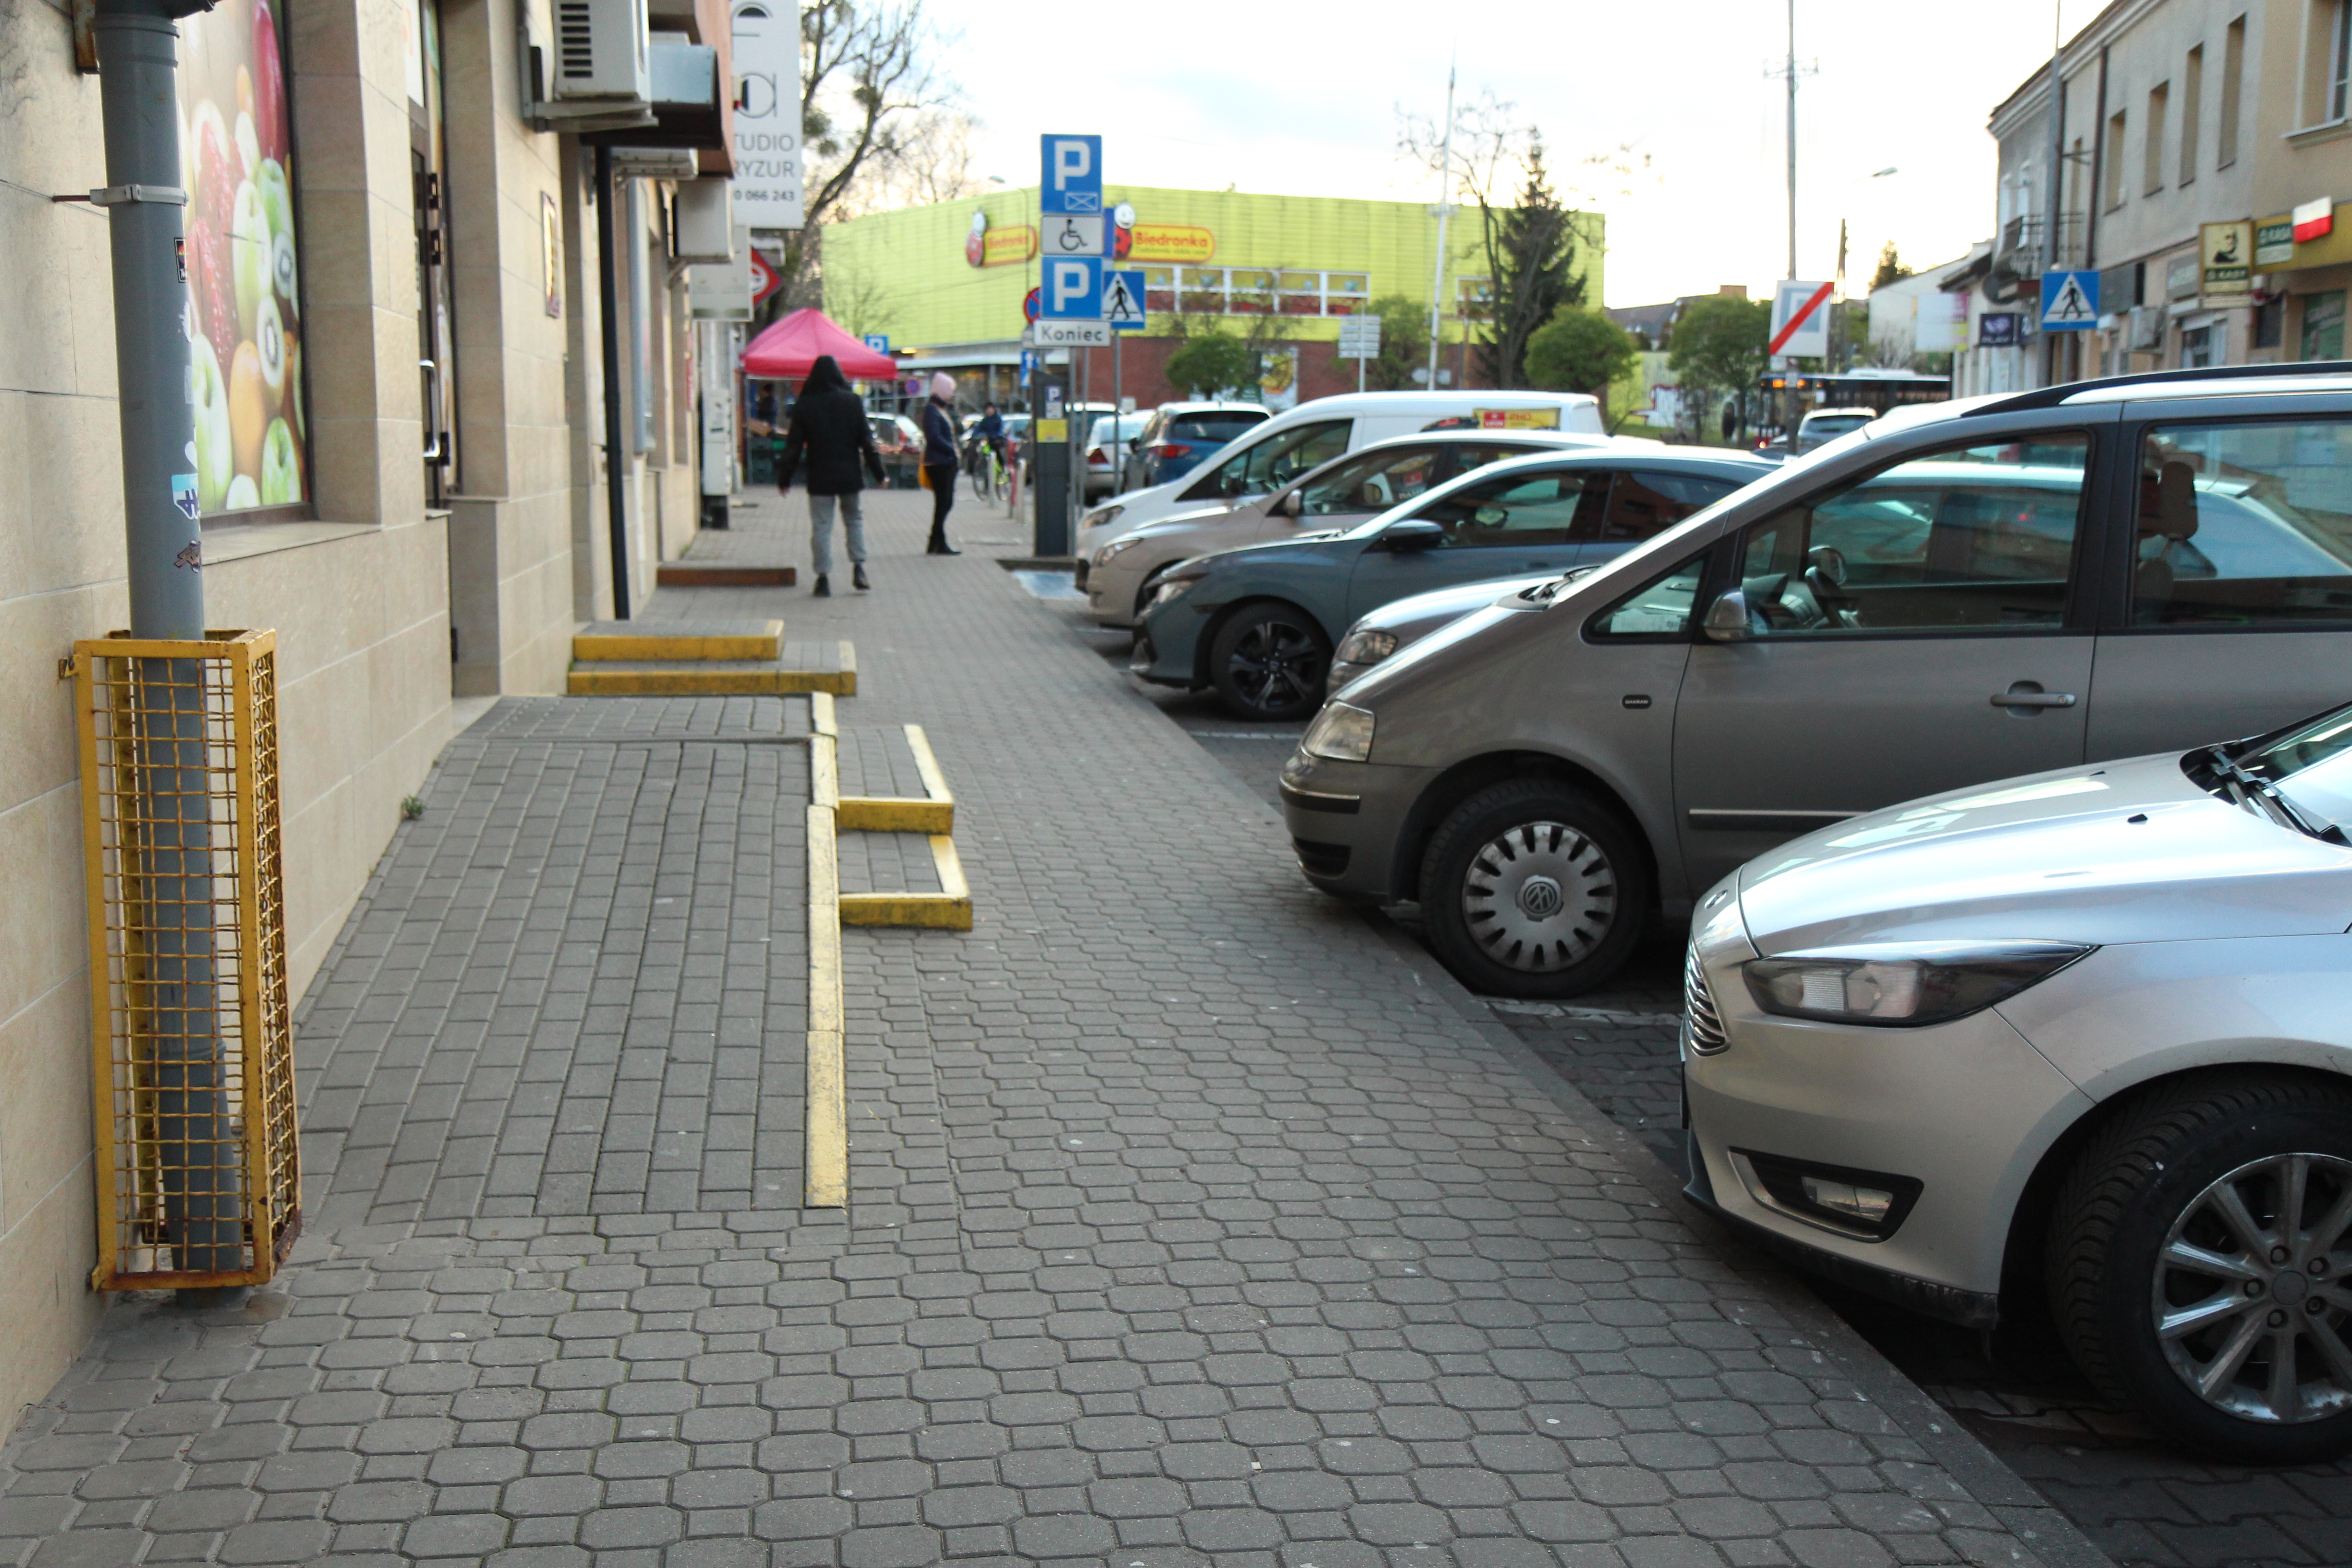 Patrzymy w przyszłość – zmieniamy centrum miasta. Na zdjęciu ulica Kościuszki ze schodkami do sklepów.